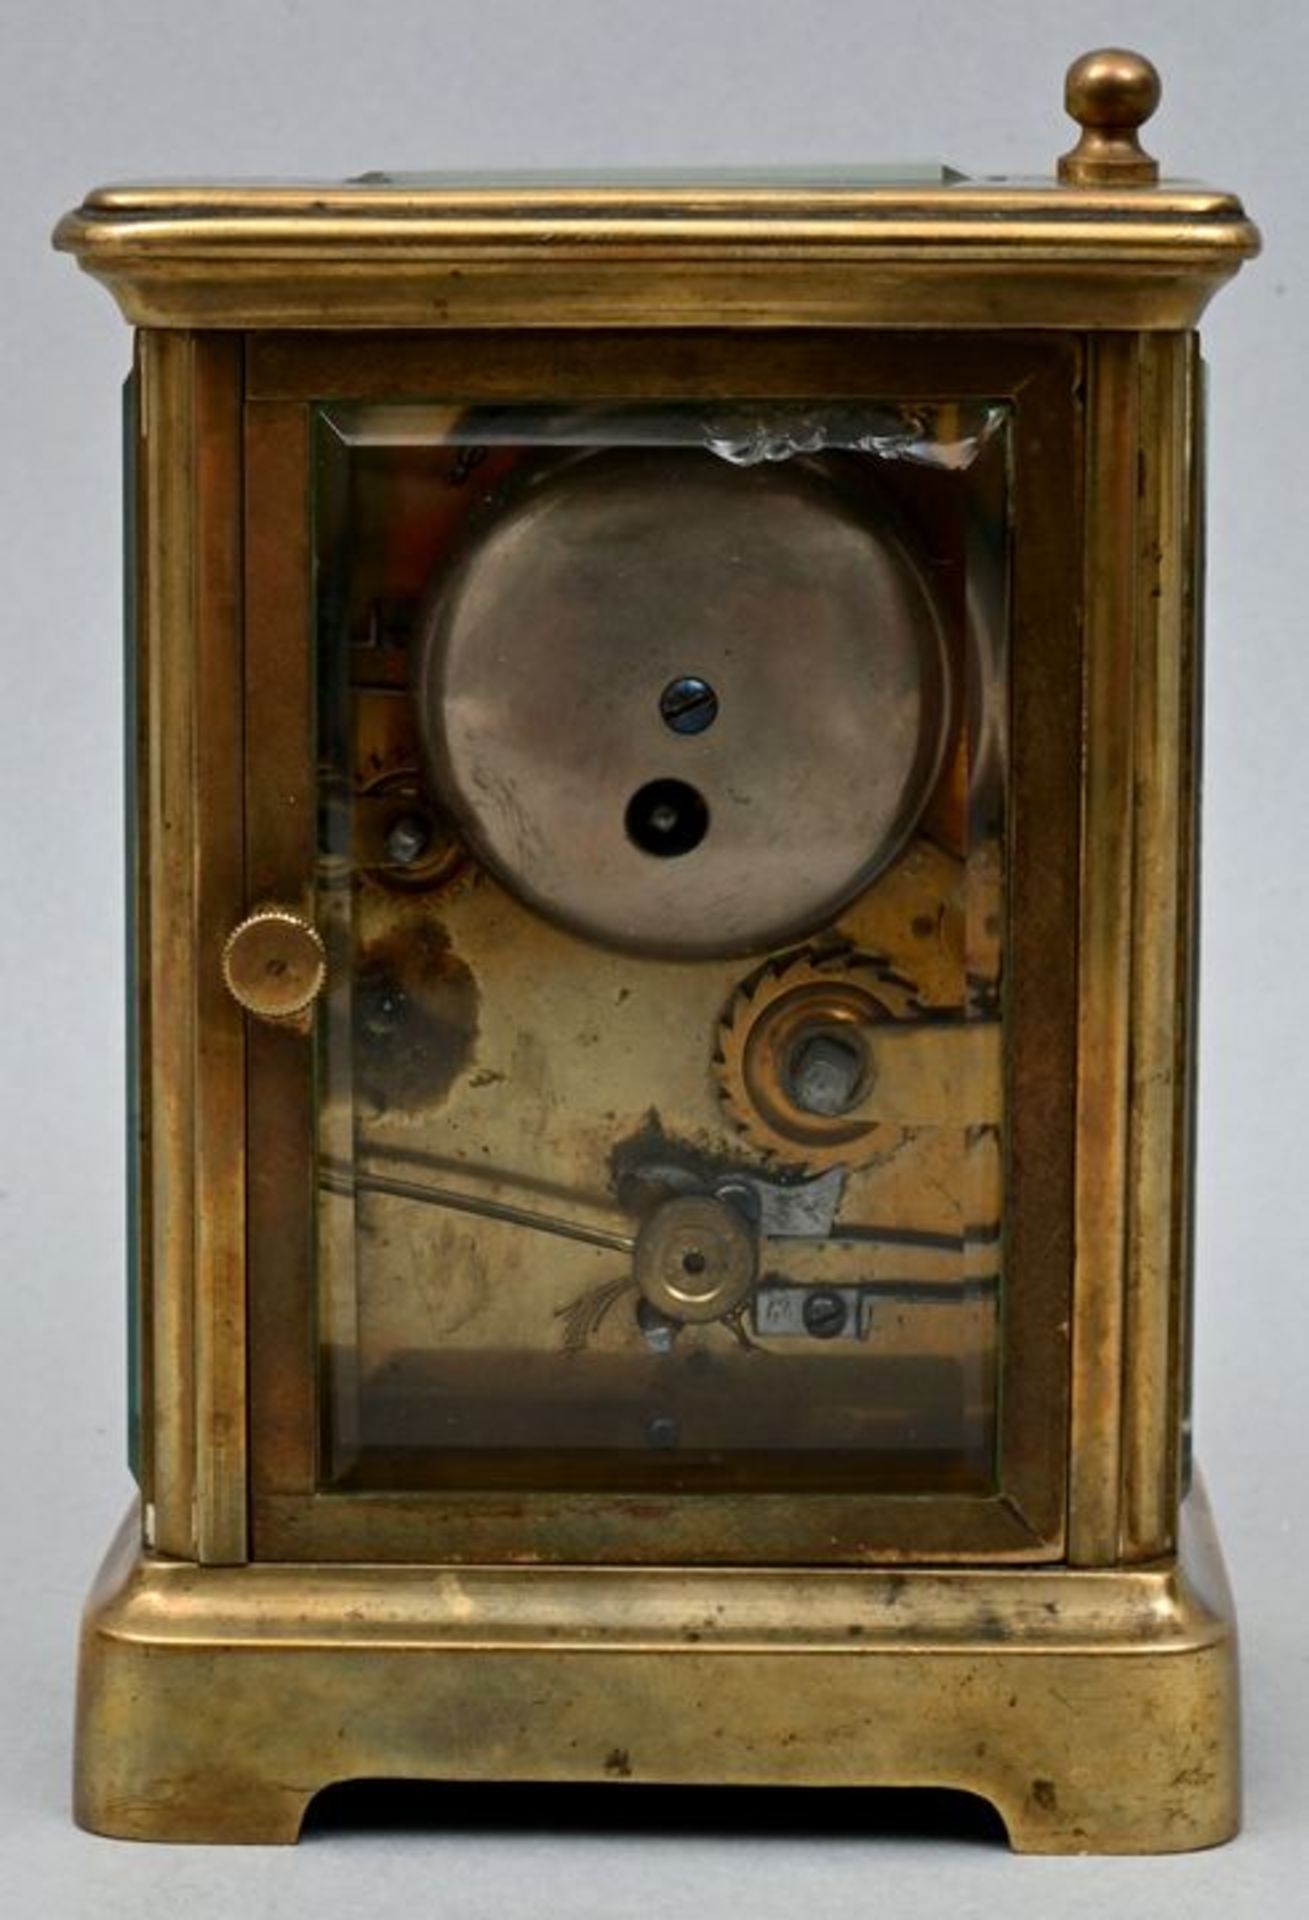 Kleiner Reisewecker / Small carriage clock - Bild 6 aus 7